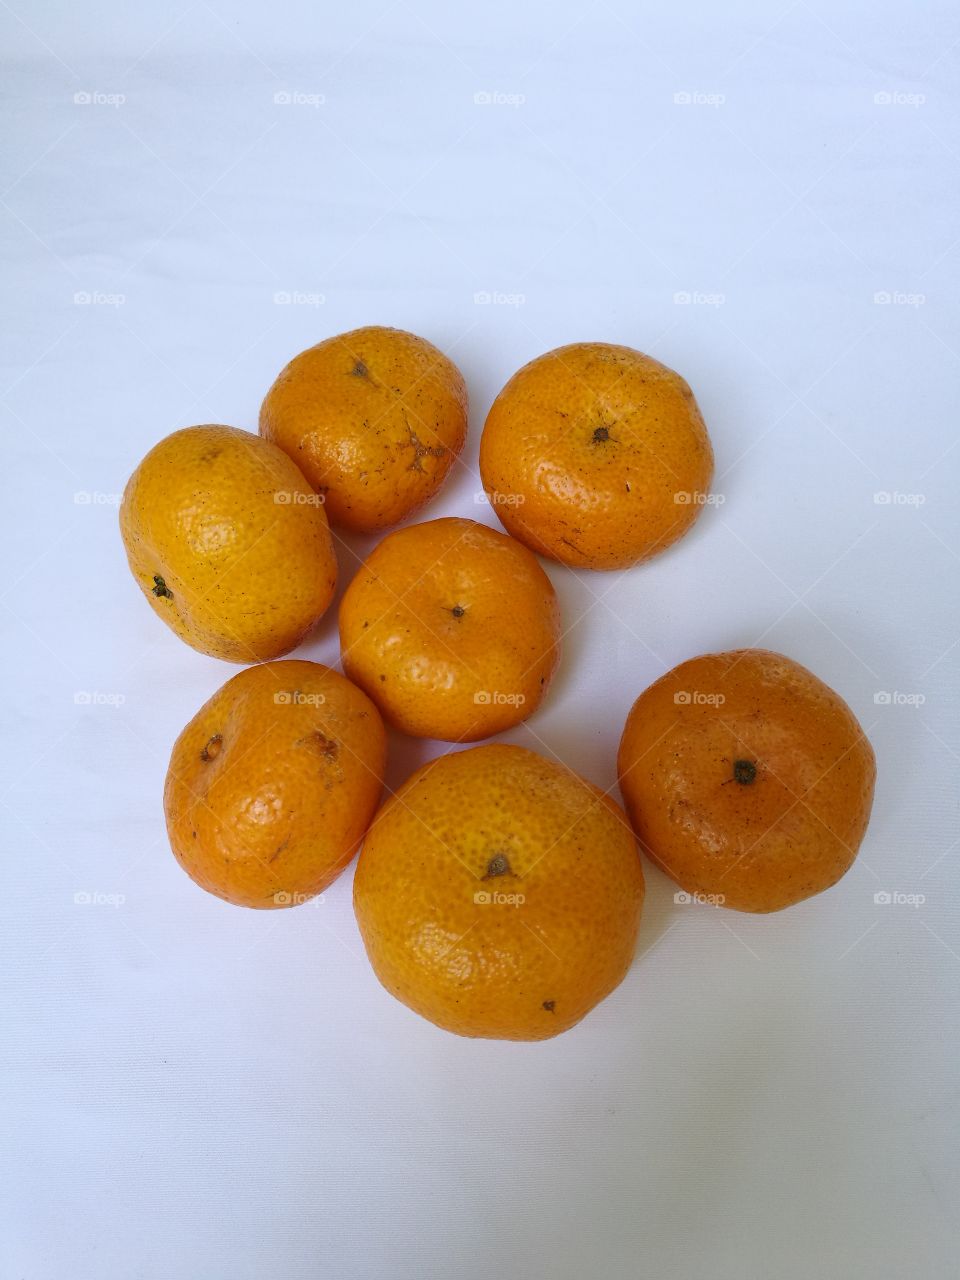 mandarins oranges